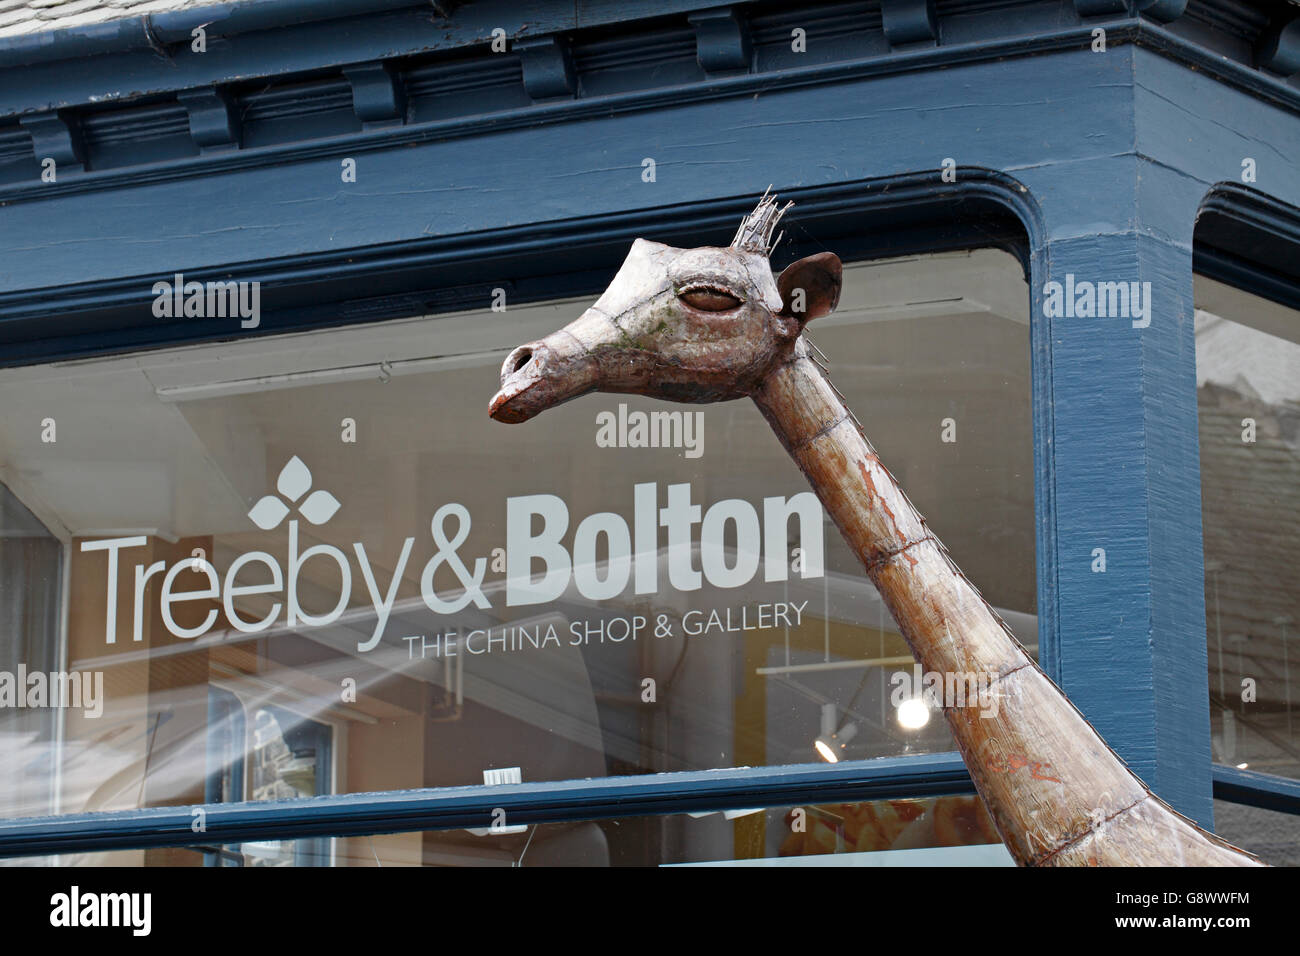 Treeby et Bolton chine boutique et galerie avec une pièce sculpturale d'une girafe en métal à l'extérieur. Keswick Cumbria. Lake District. Banque D'Images